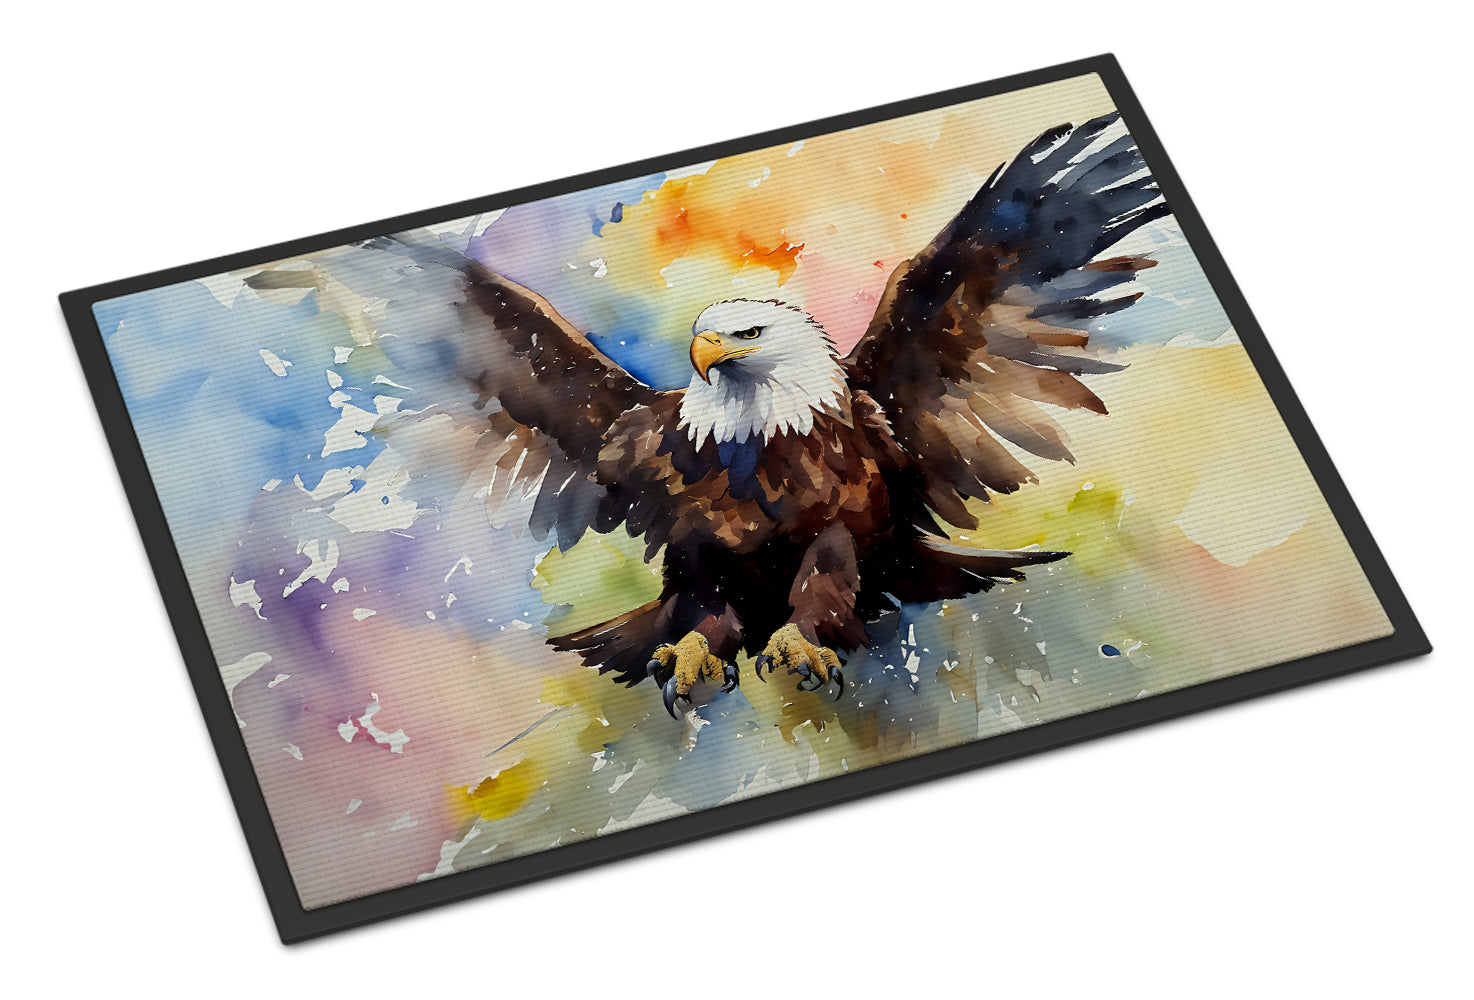 Buy this Eagle Doormat